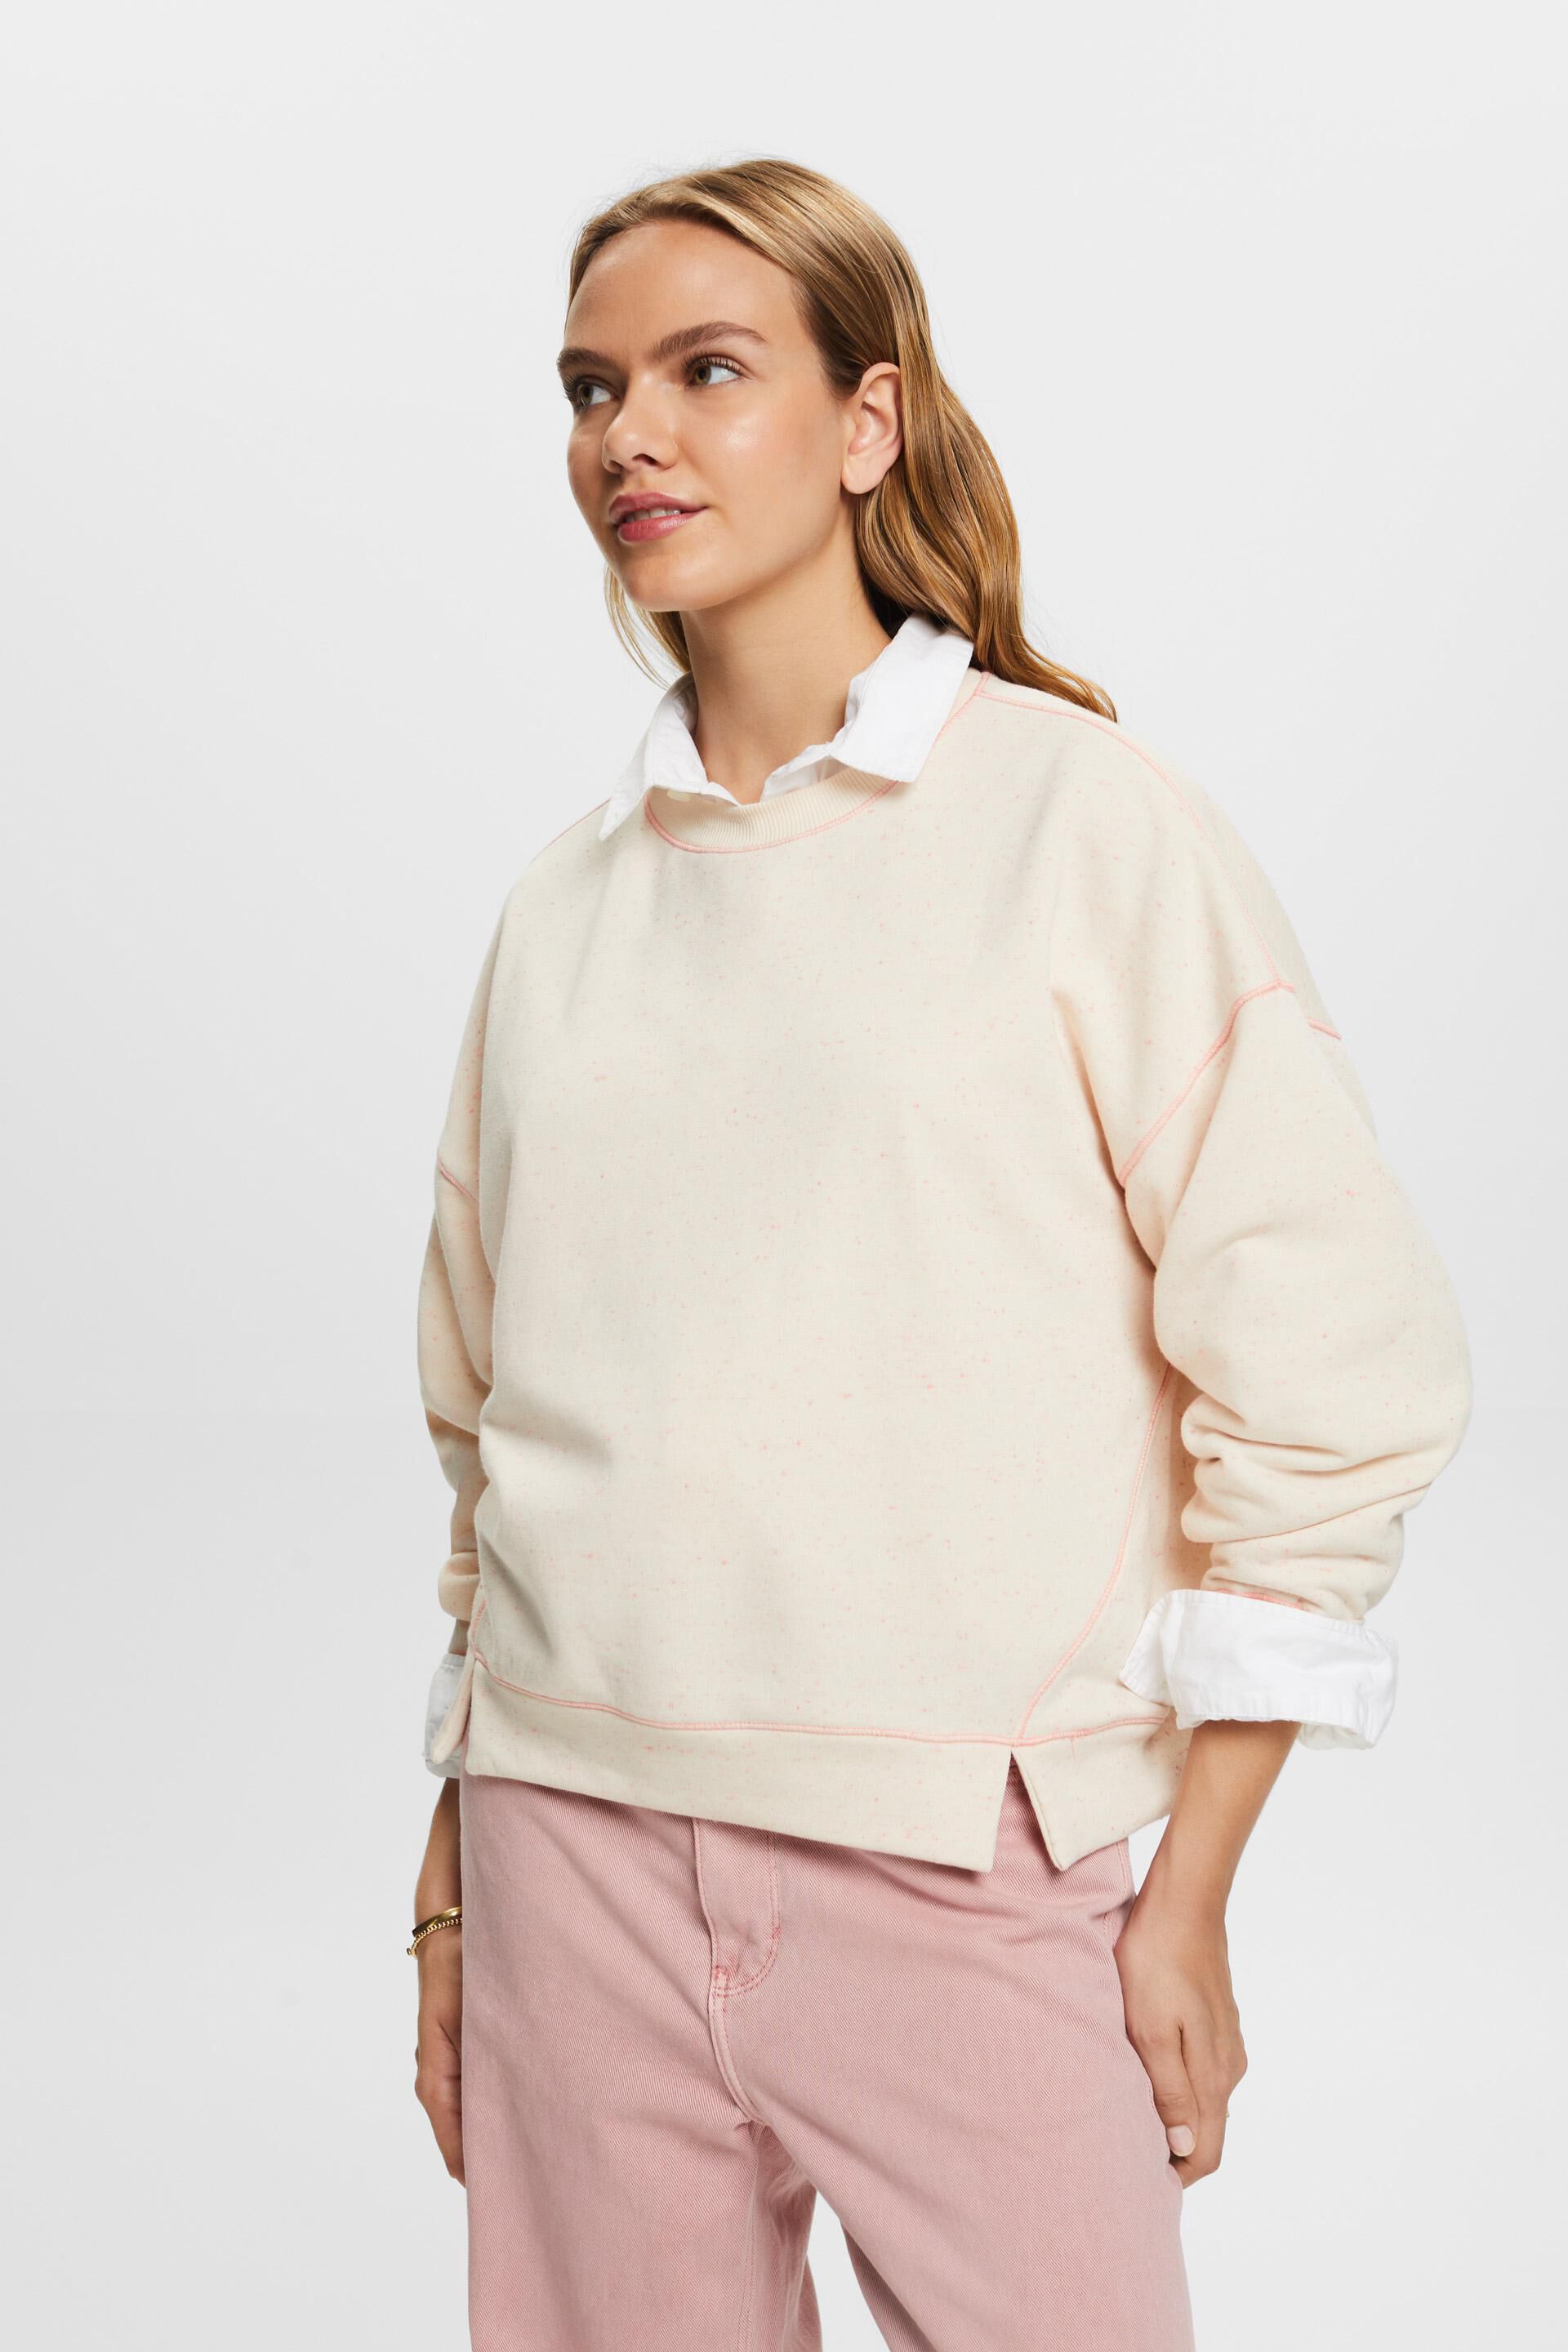 Esprit Sprinkled sweatshirt, cotton blend